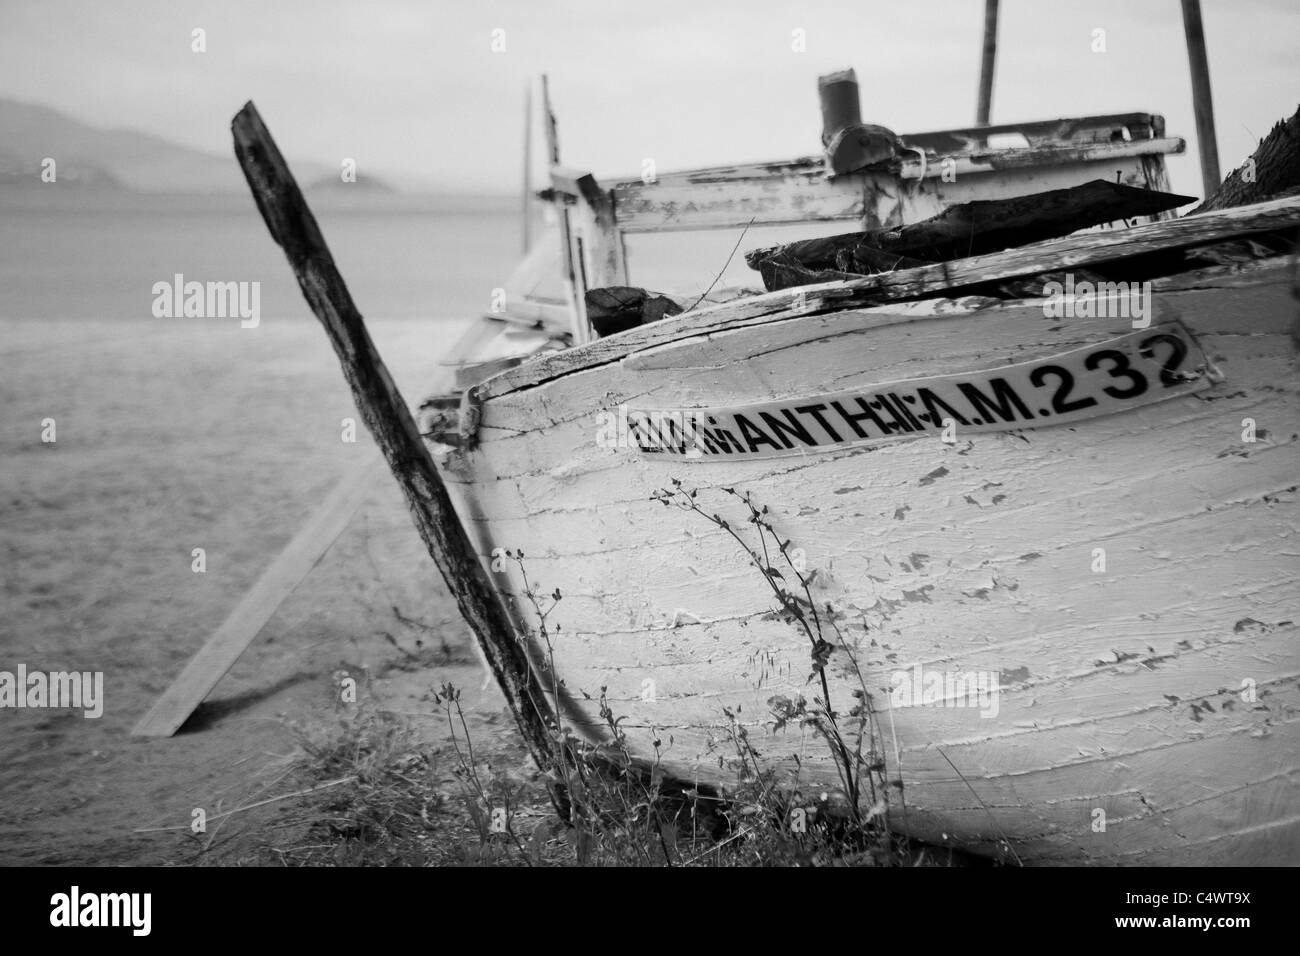 Dettaglio di un vecchio greco in barca da pesca Foto Stock